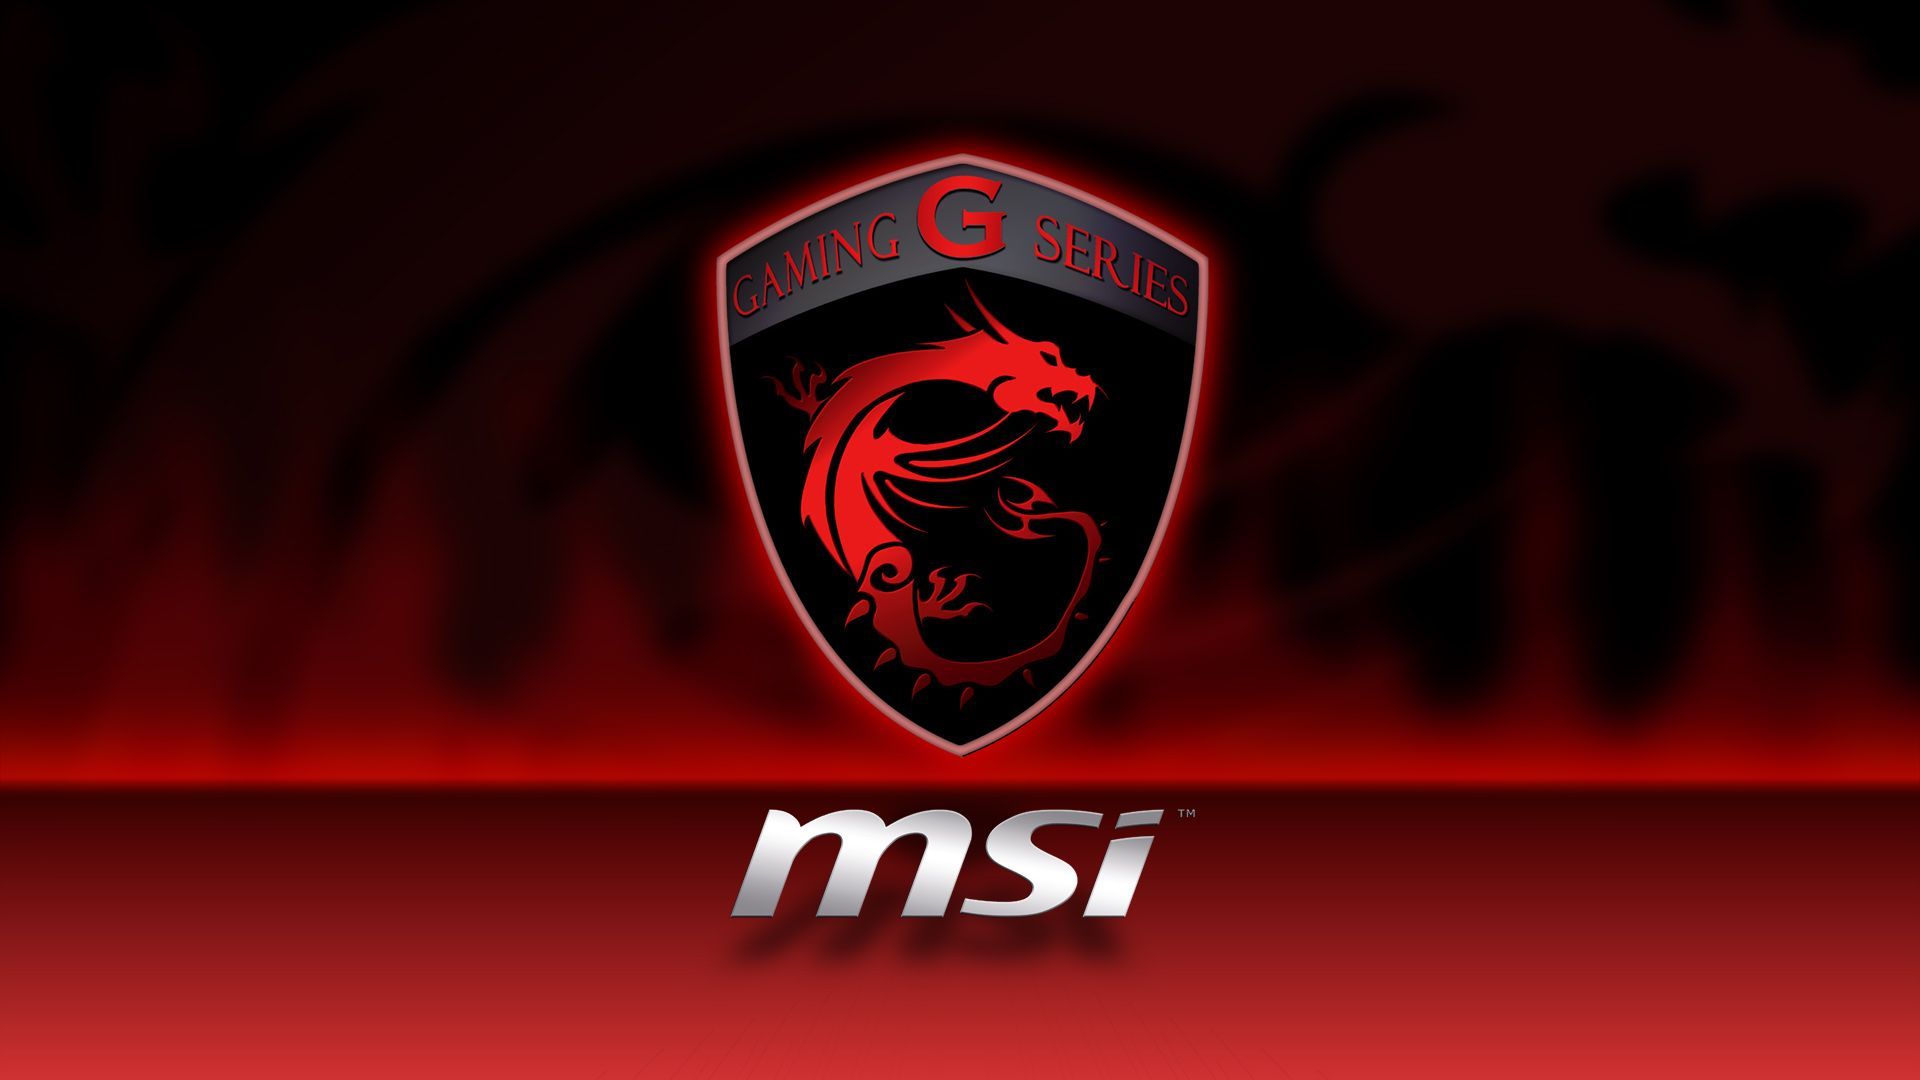 Gaming :'). Msi logo, Msi laptop, Msi